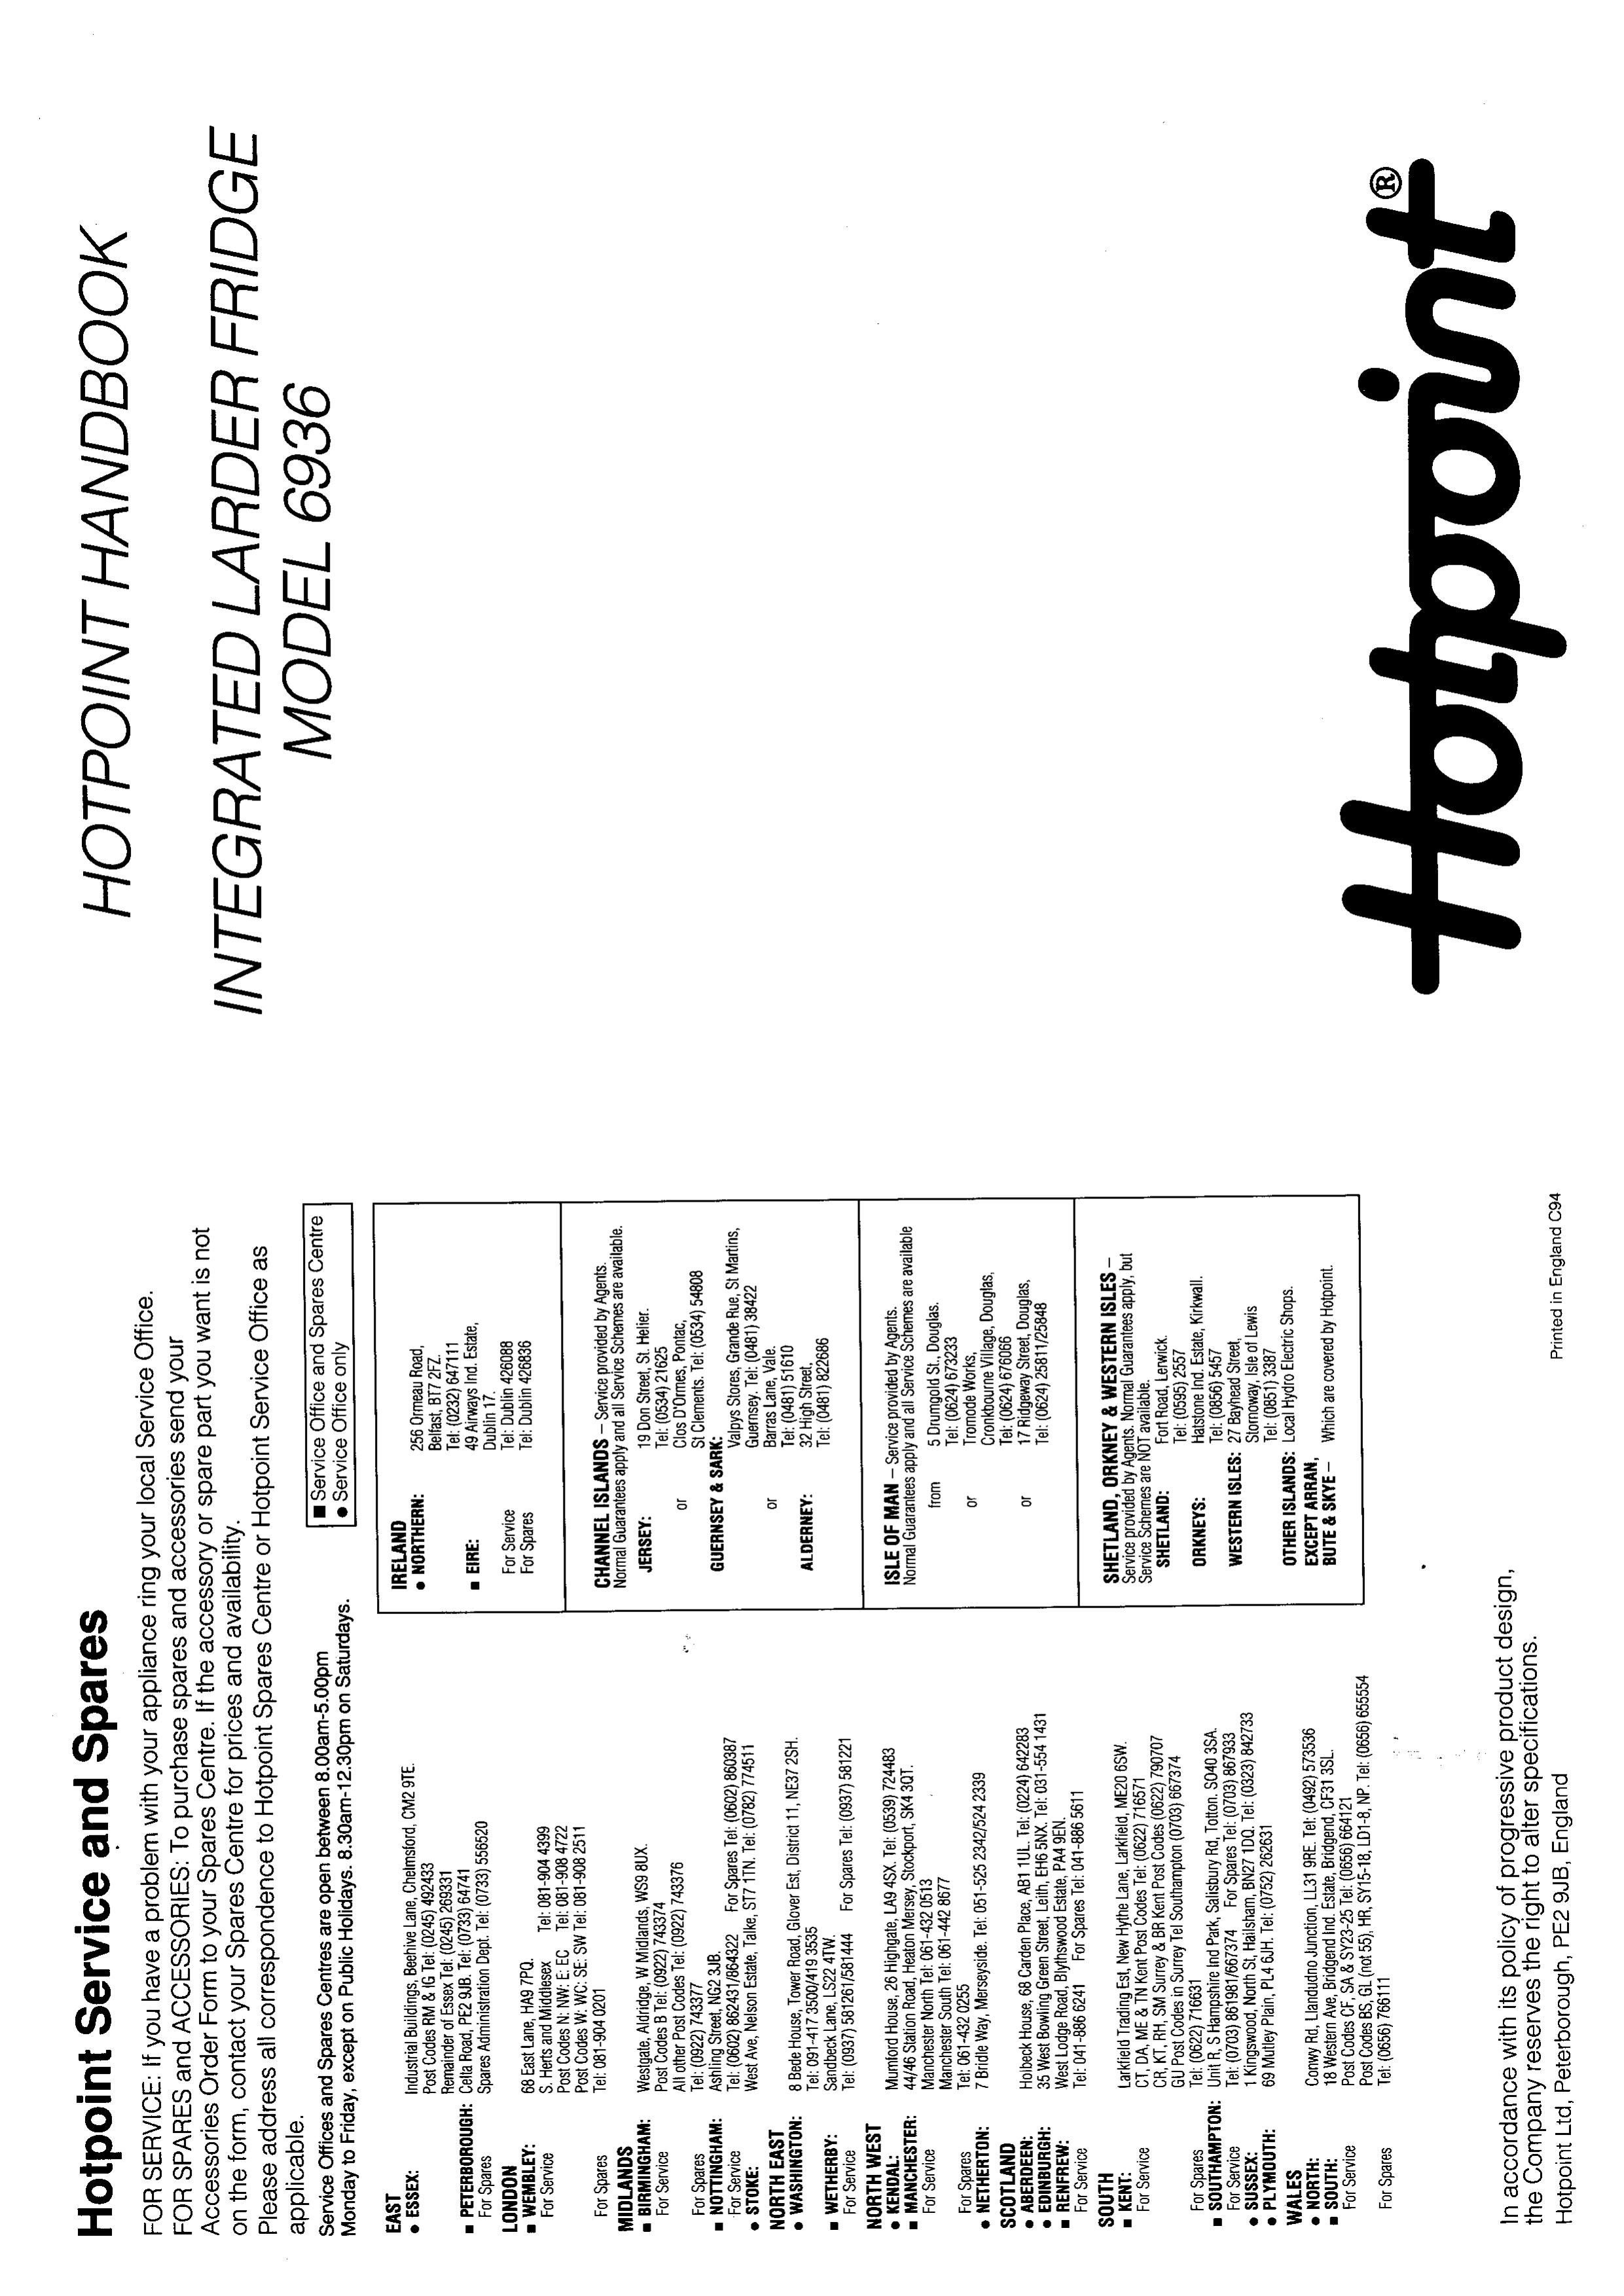 Hotpoint 6936 Refrigerator User Manual